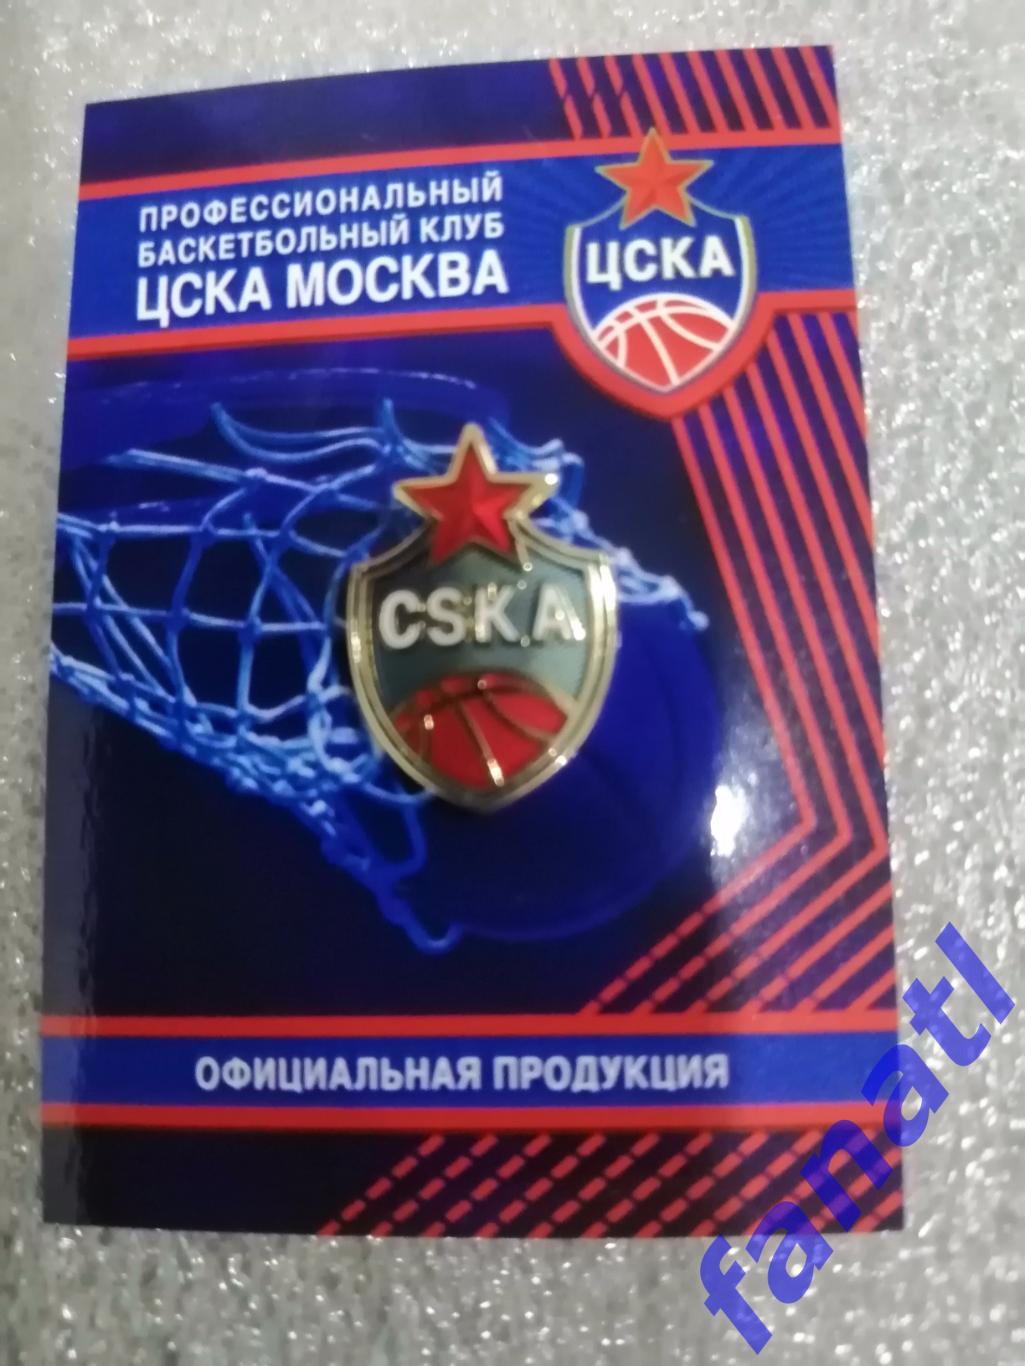 Значок баскетбольного клуба ЦСКА